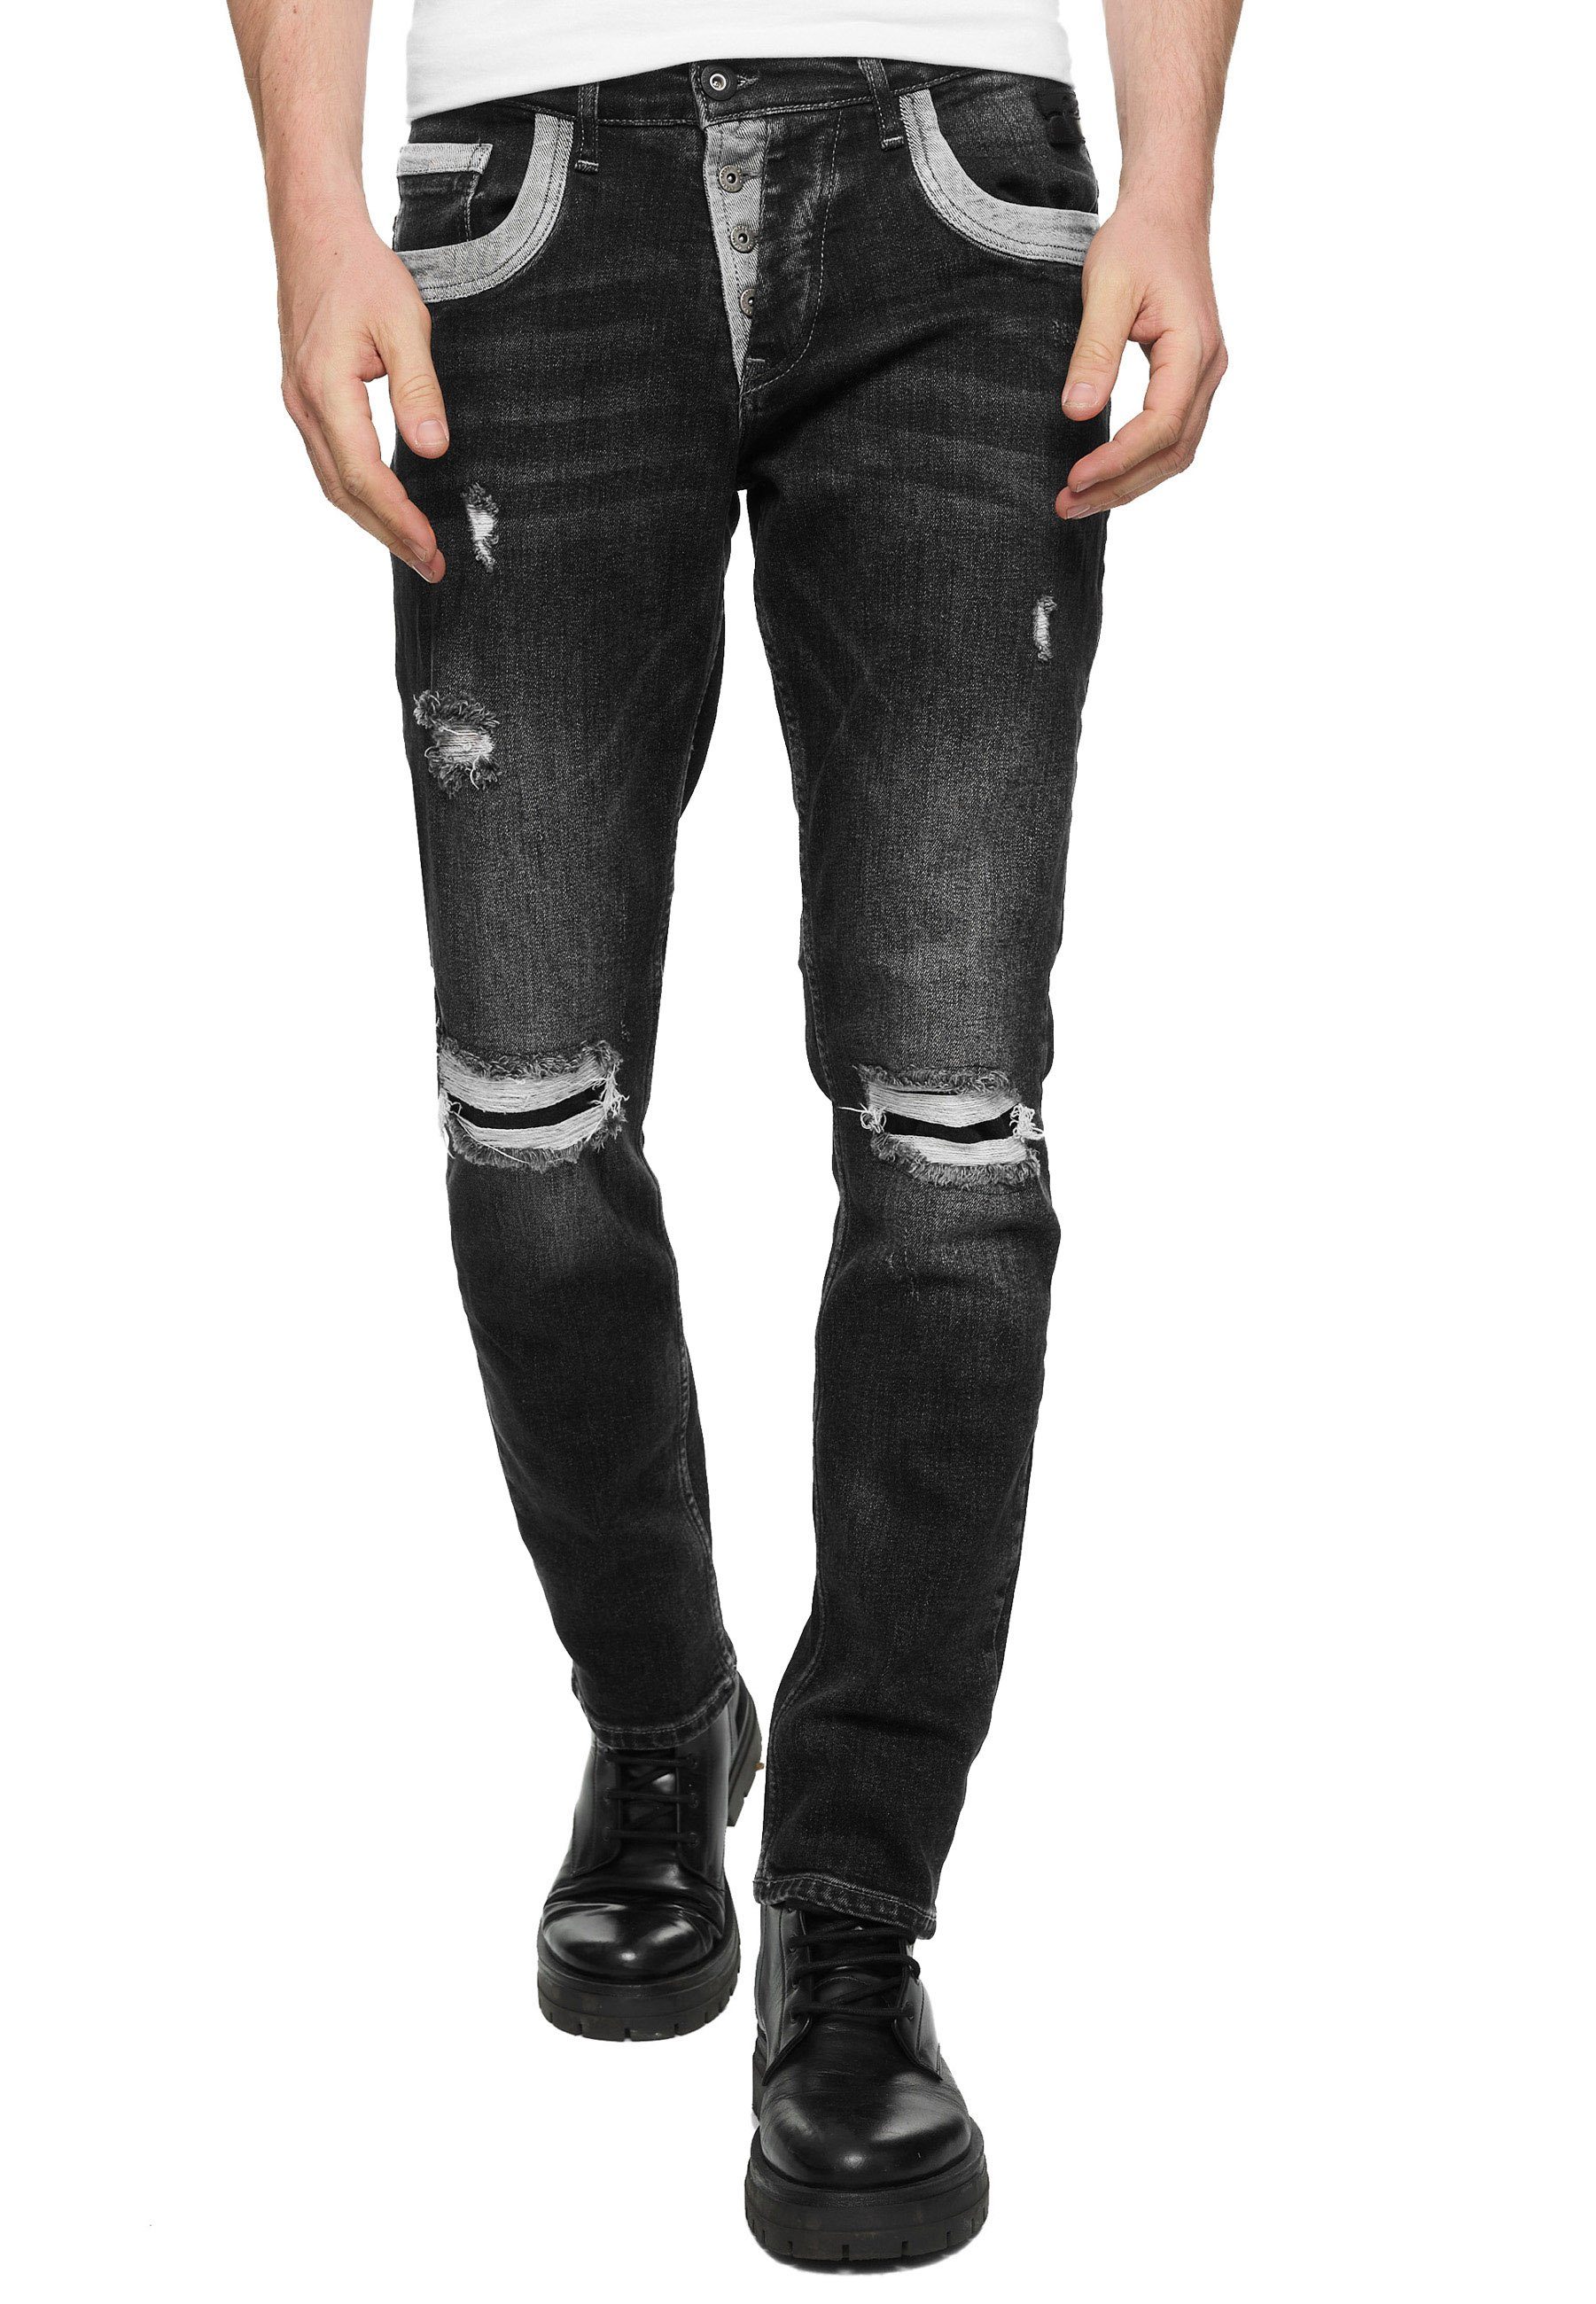 Rusty Neal Straight-Jeans YOKOTE mit farblich abgesetzten Details schwarz